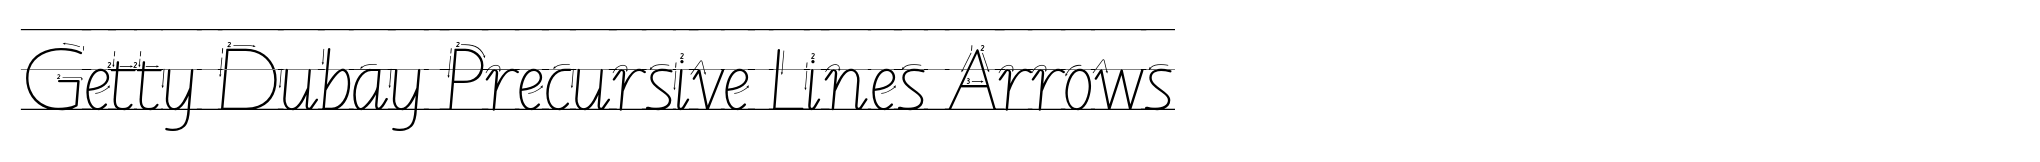 Getty Dubay Precursive Lines Arrows image